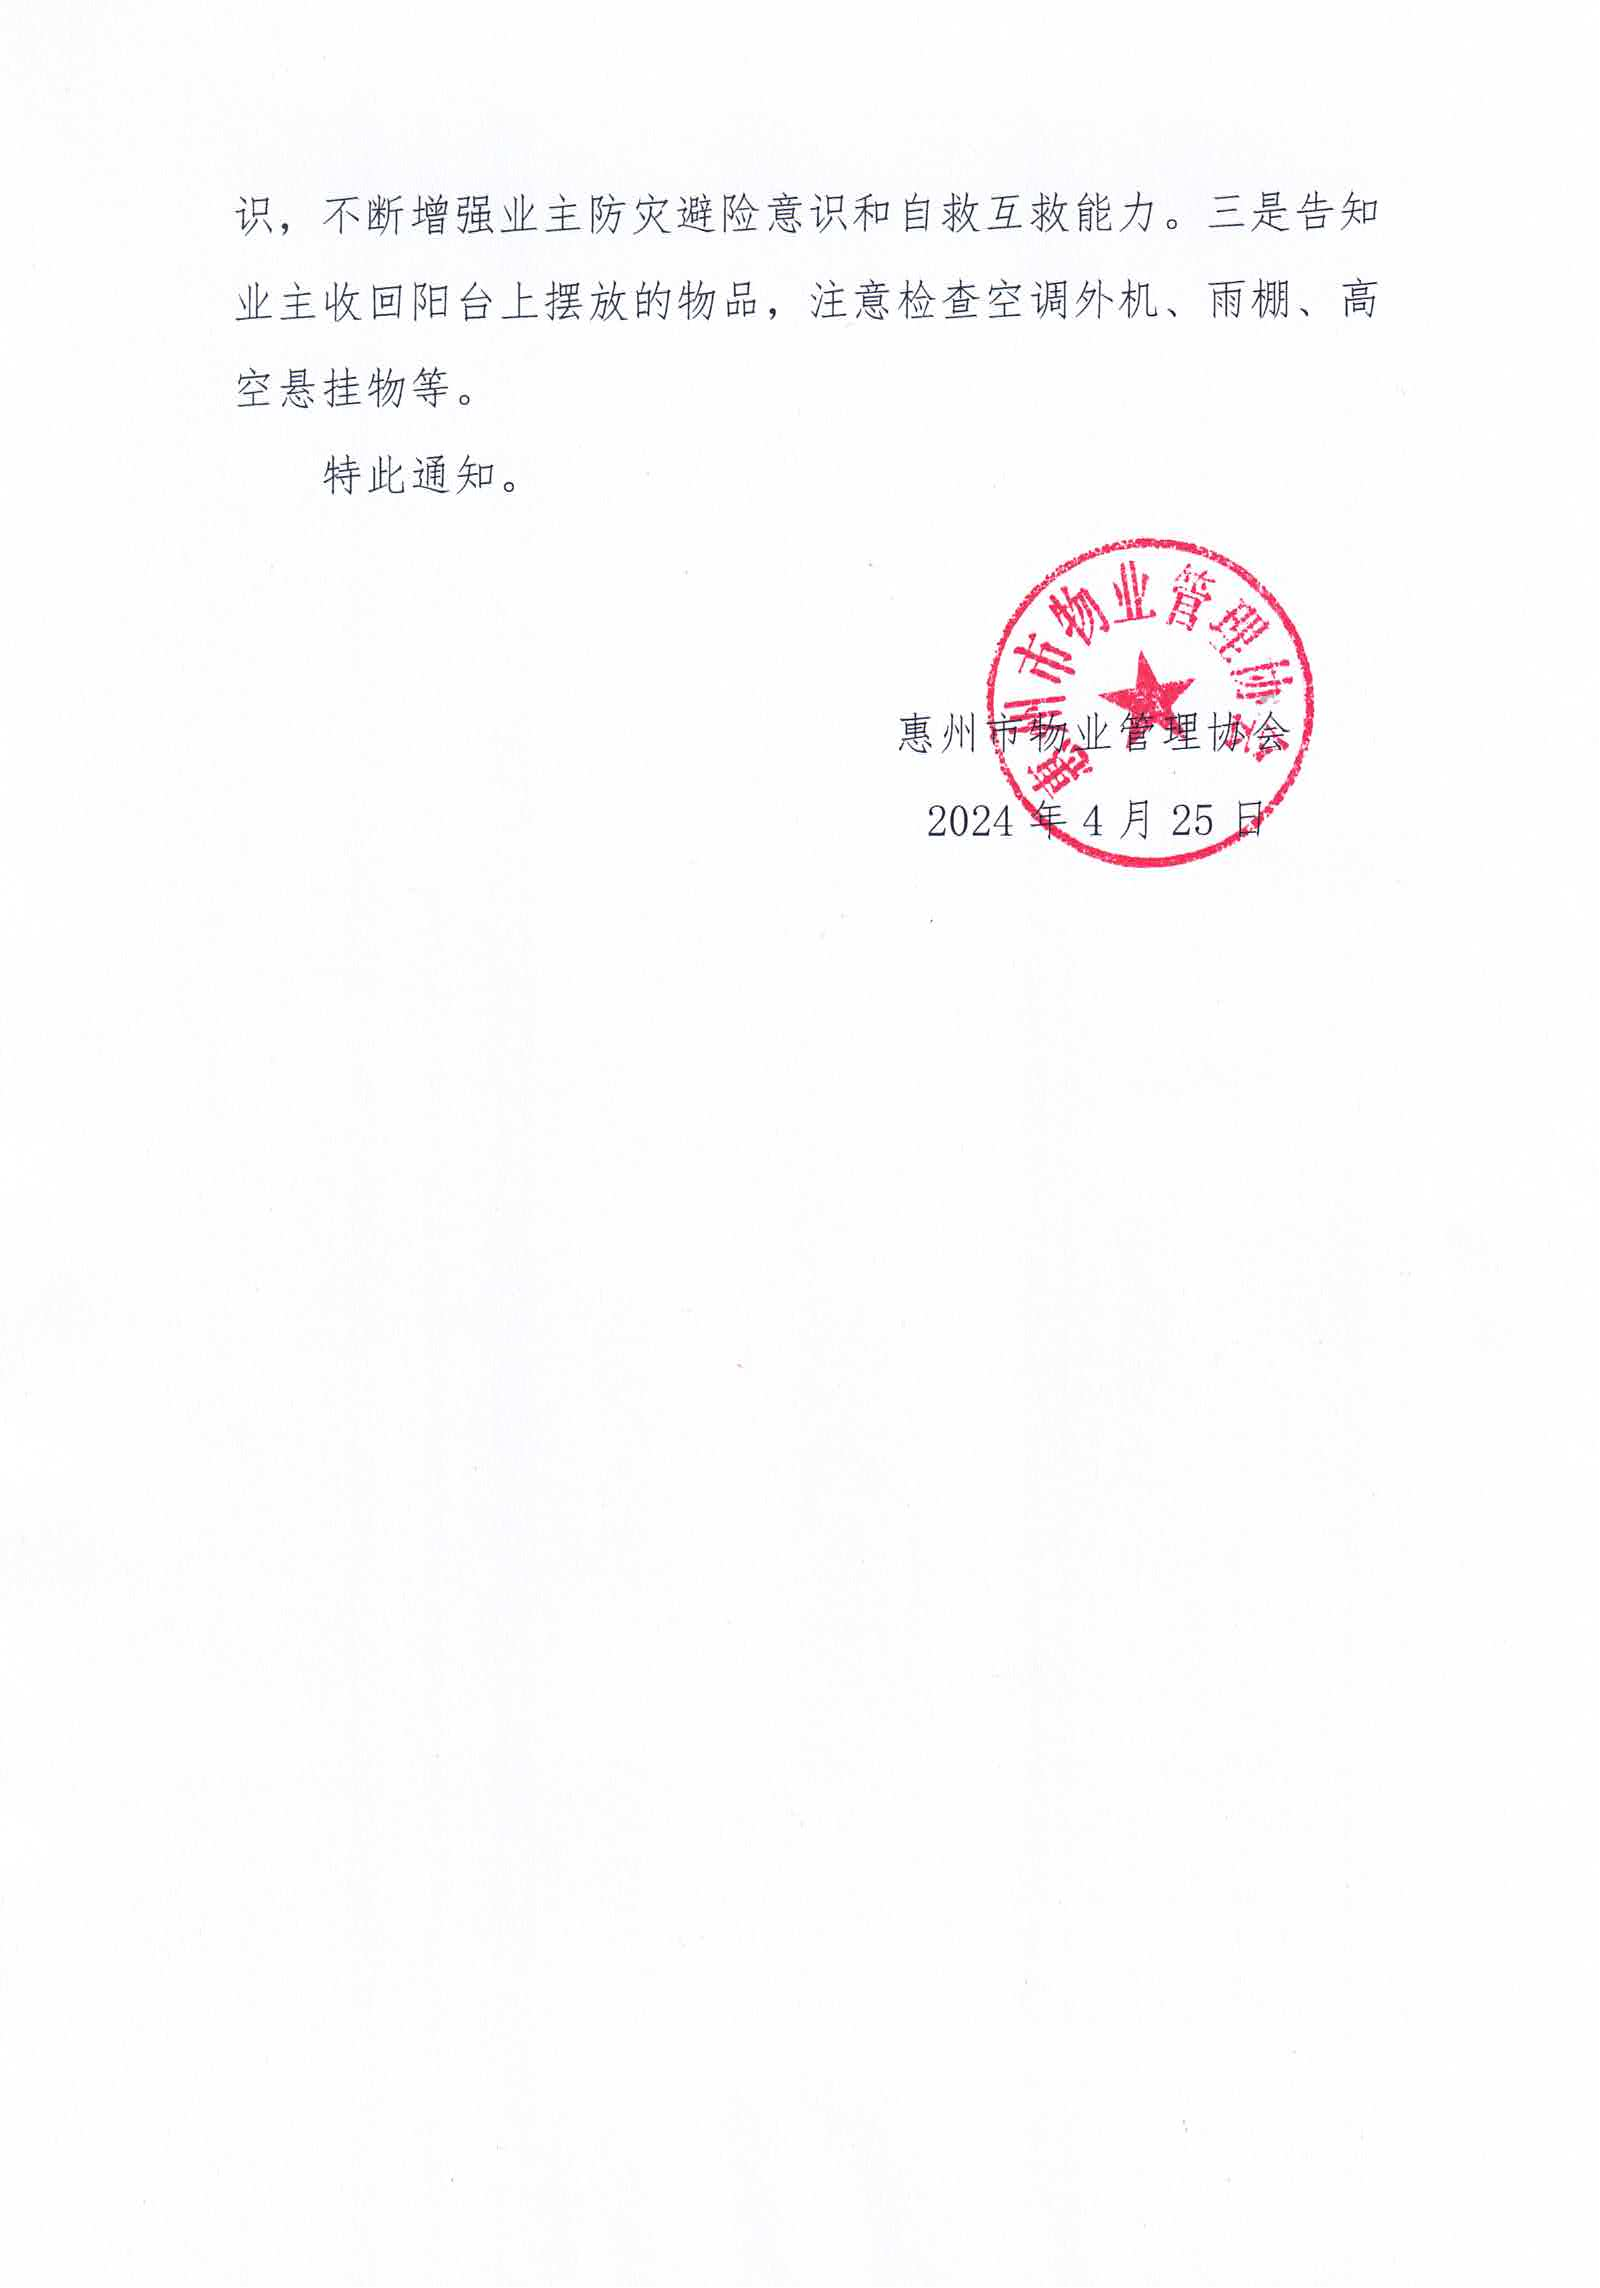 关于做好当前惠州市物业管理区域内防汛防旱防风防冻应急预案工作的紧急通知_03.png